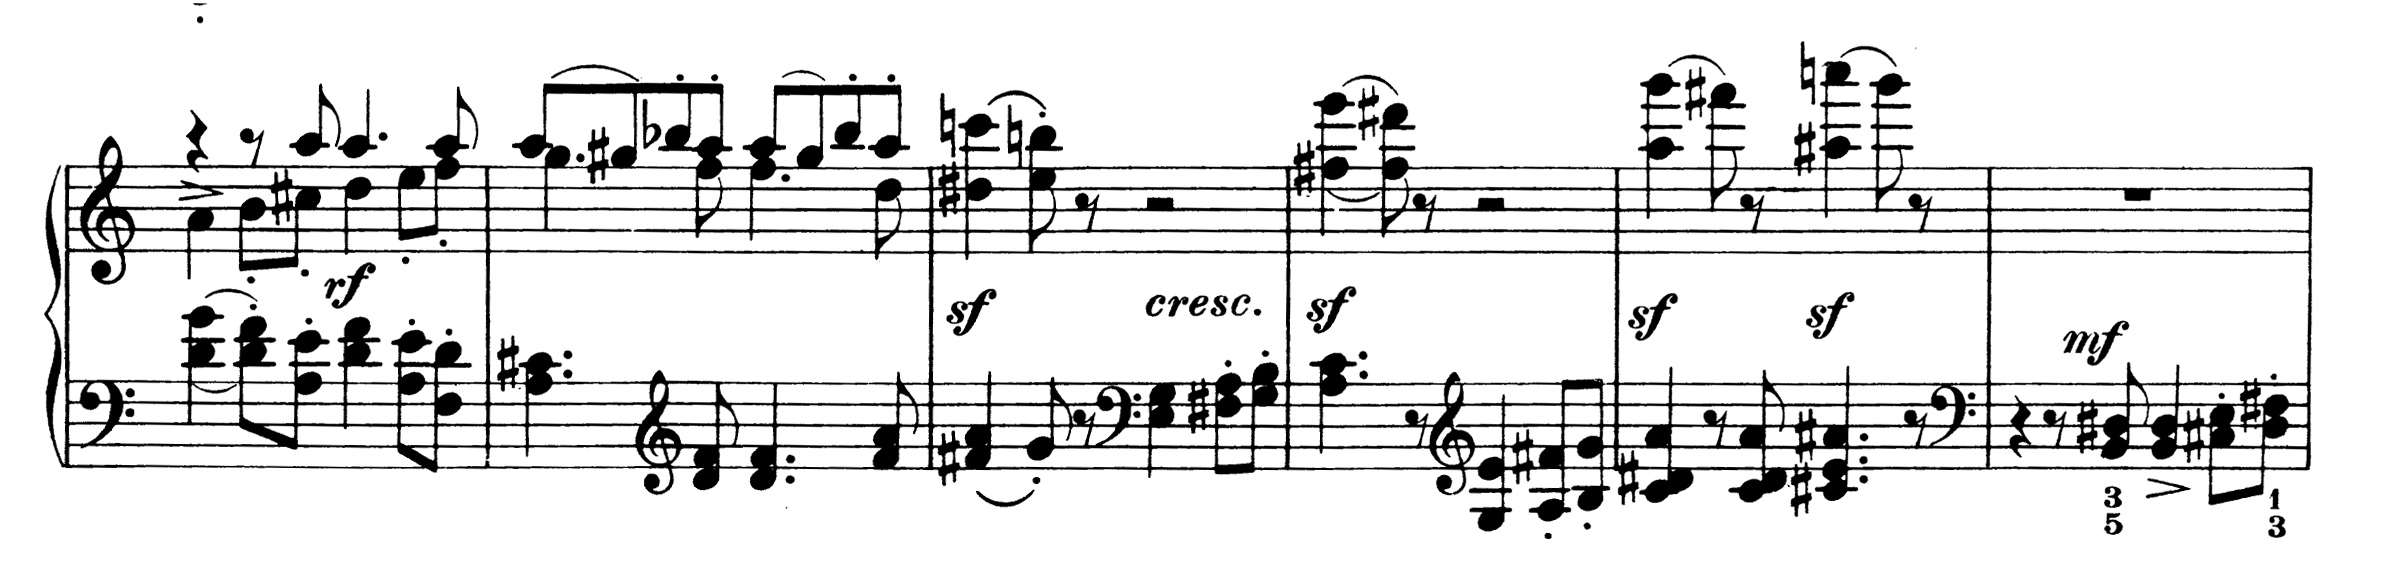 Brahms Sonata.jpg